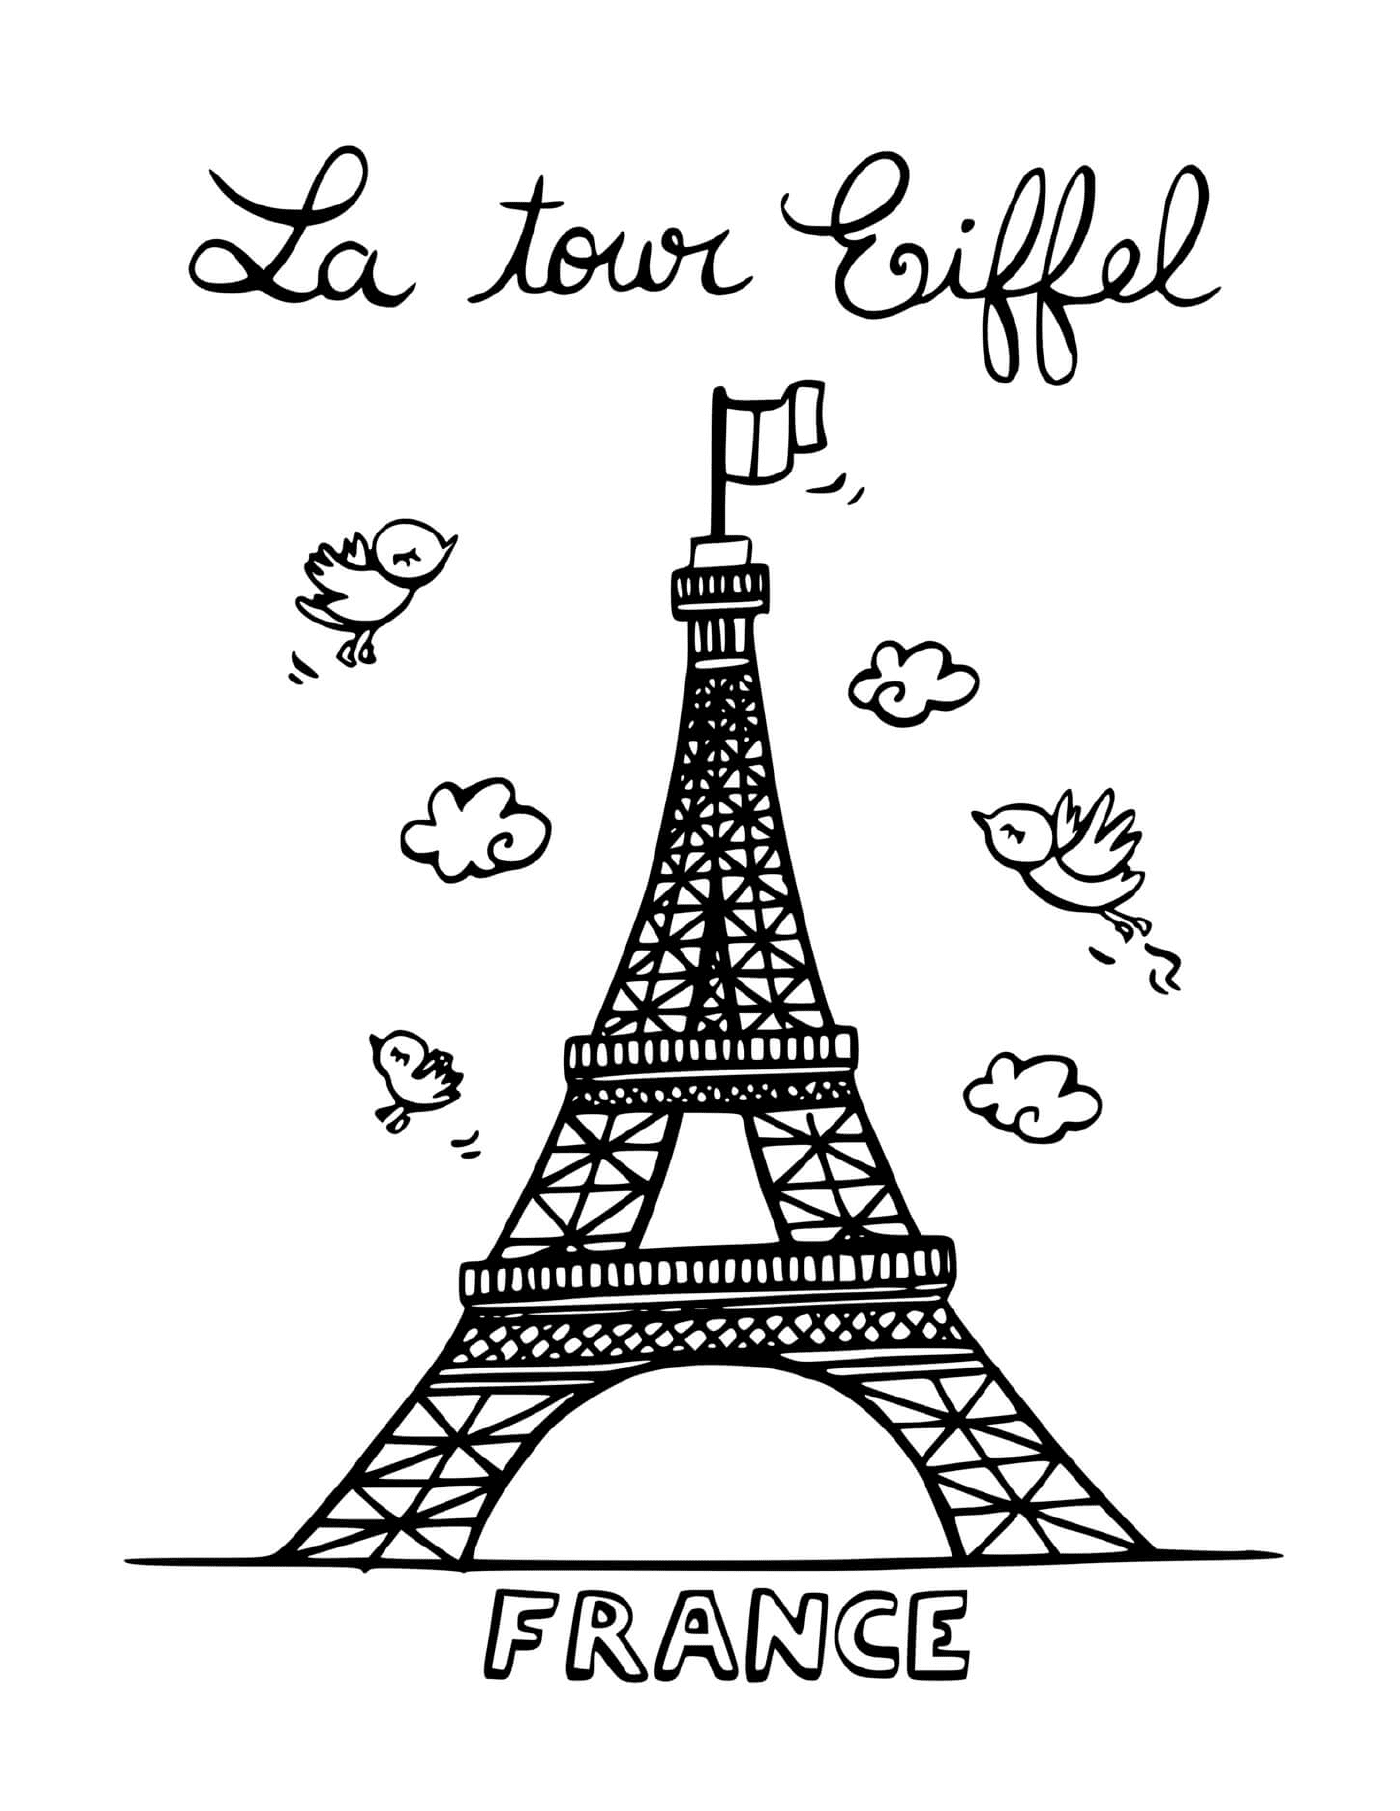  La Torre Eiffel de París en Francia 